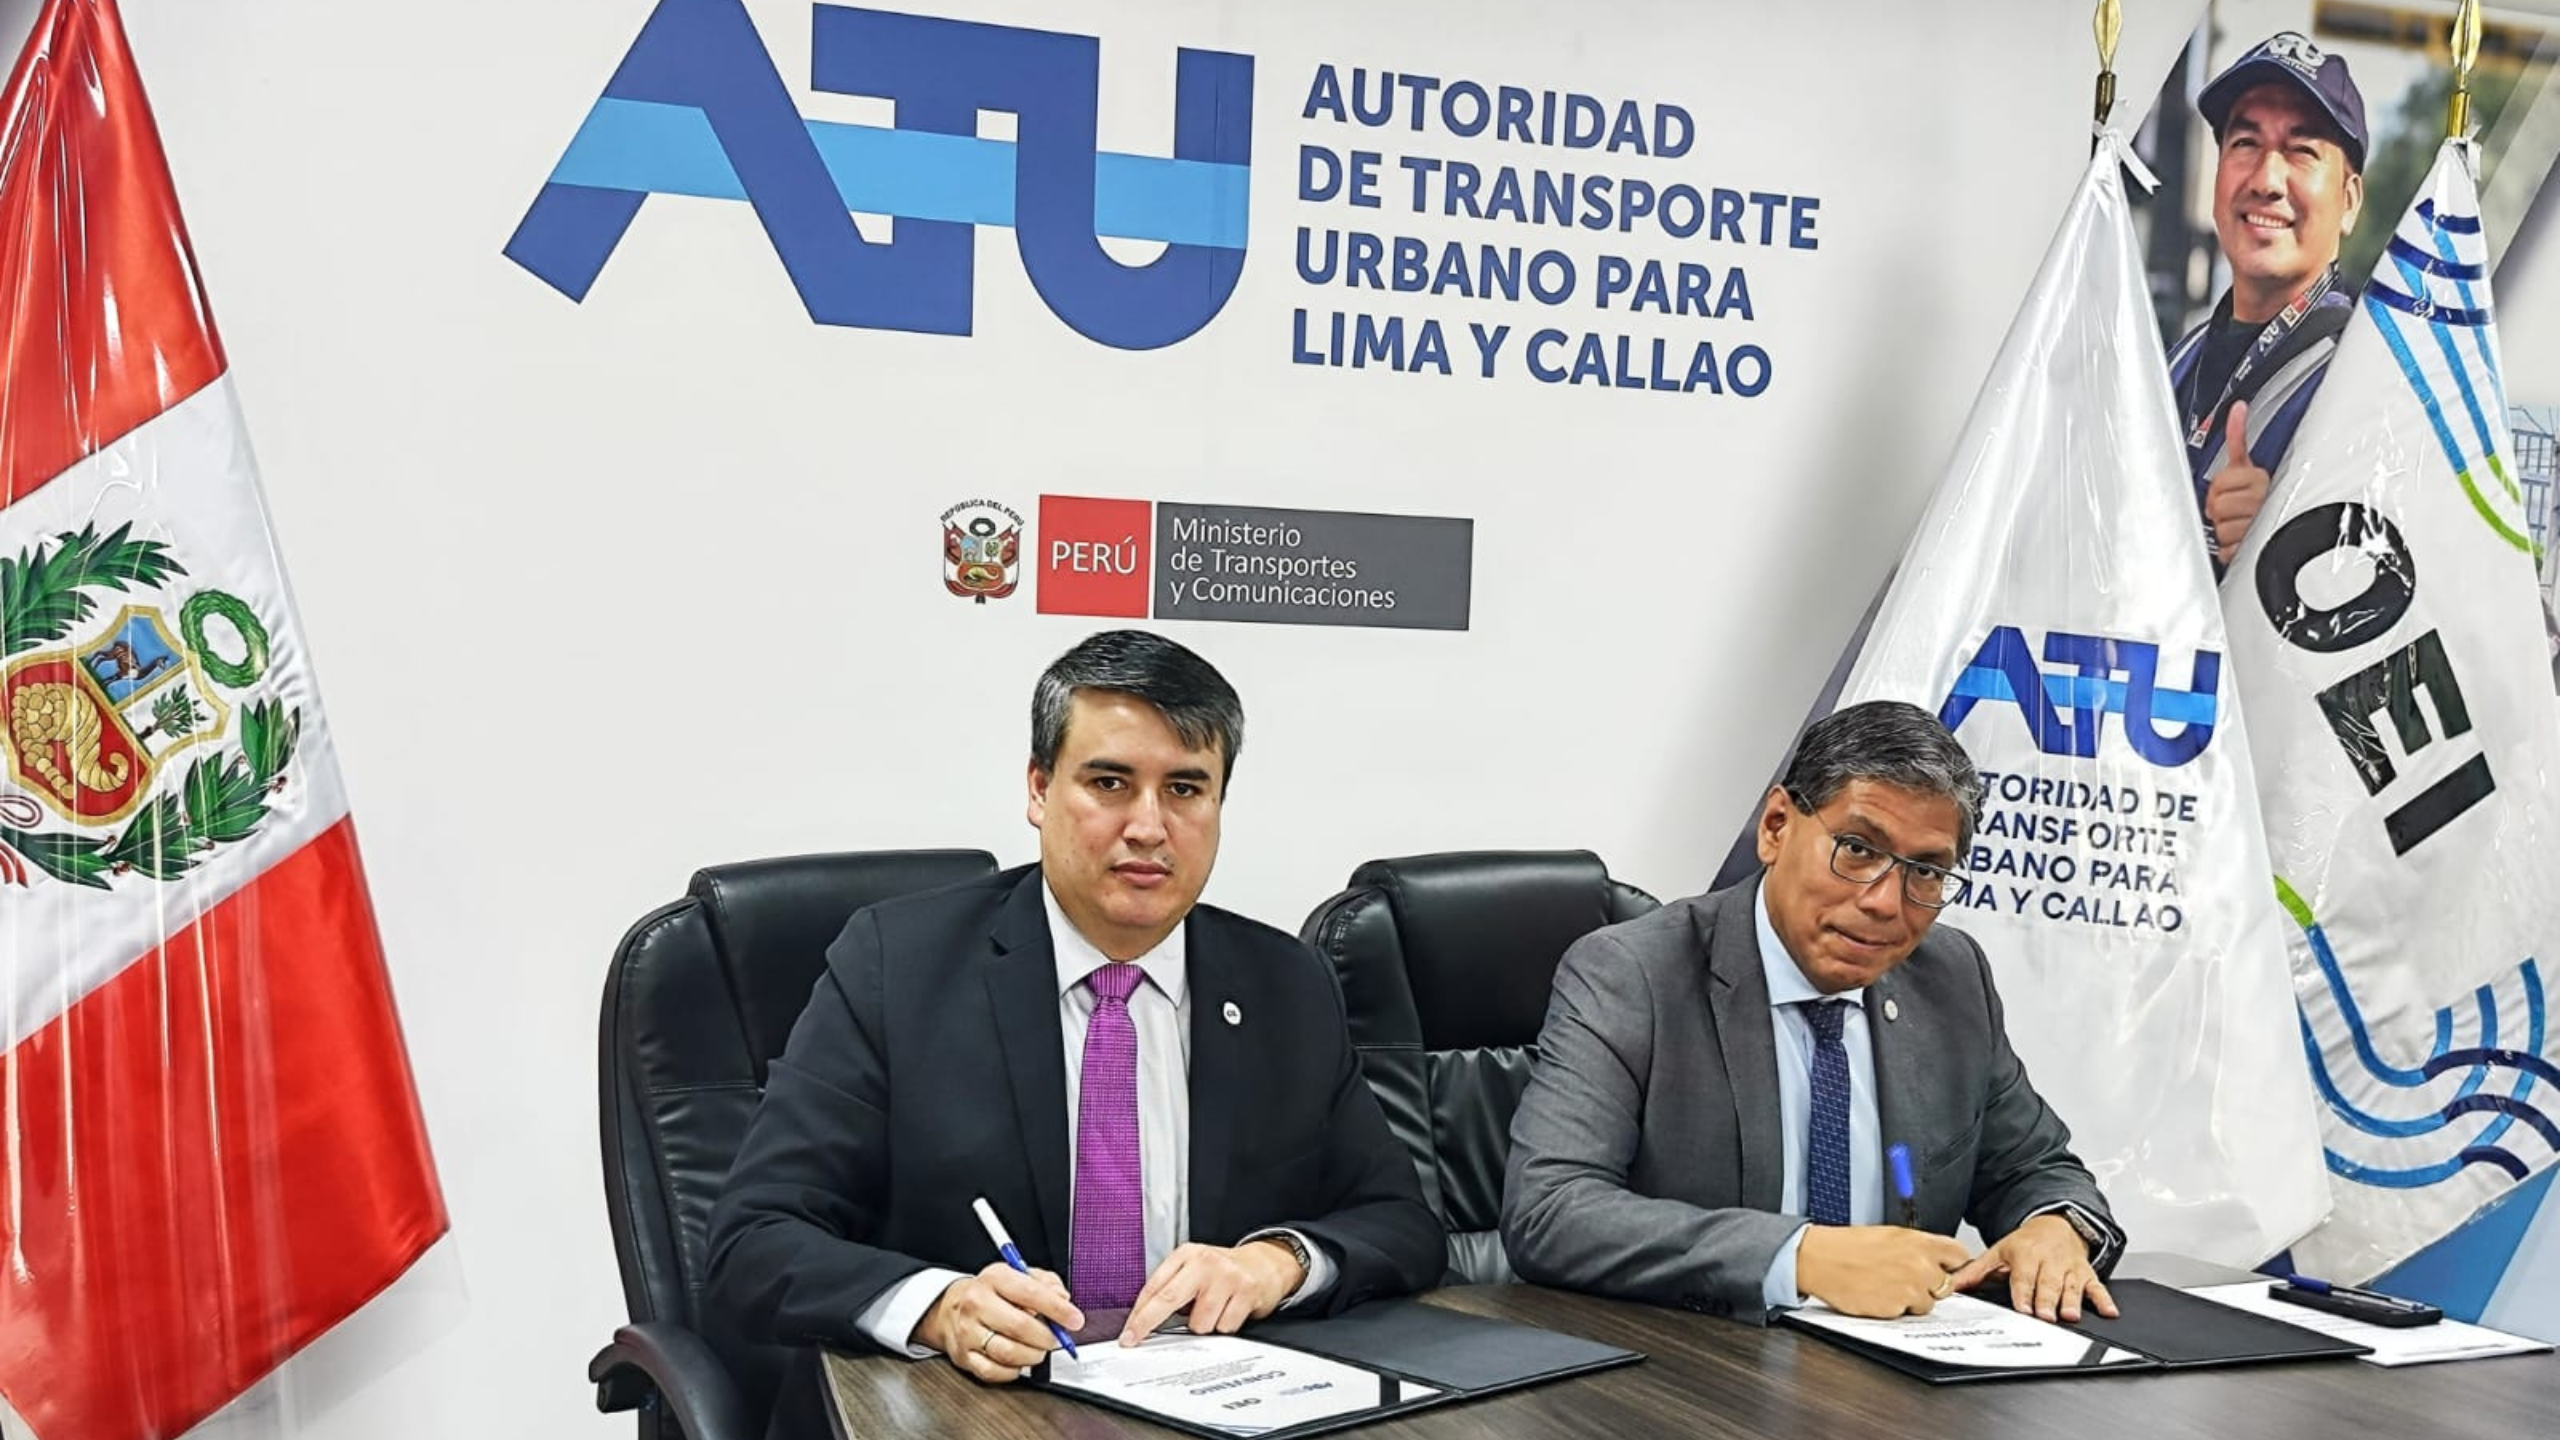 La OEI firma un convenio con la Autoridad de Transporte Urbano (ATU) con el fin de promover la lectura en espacios de transporte